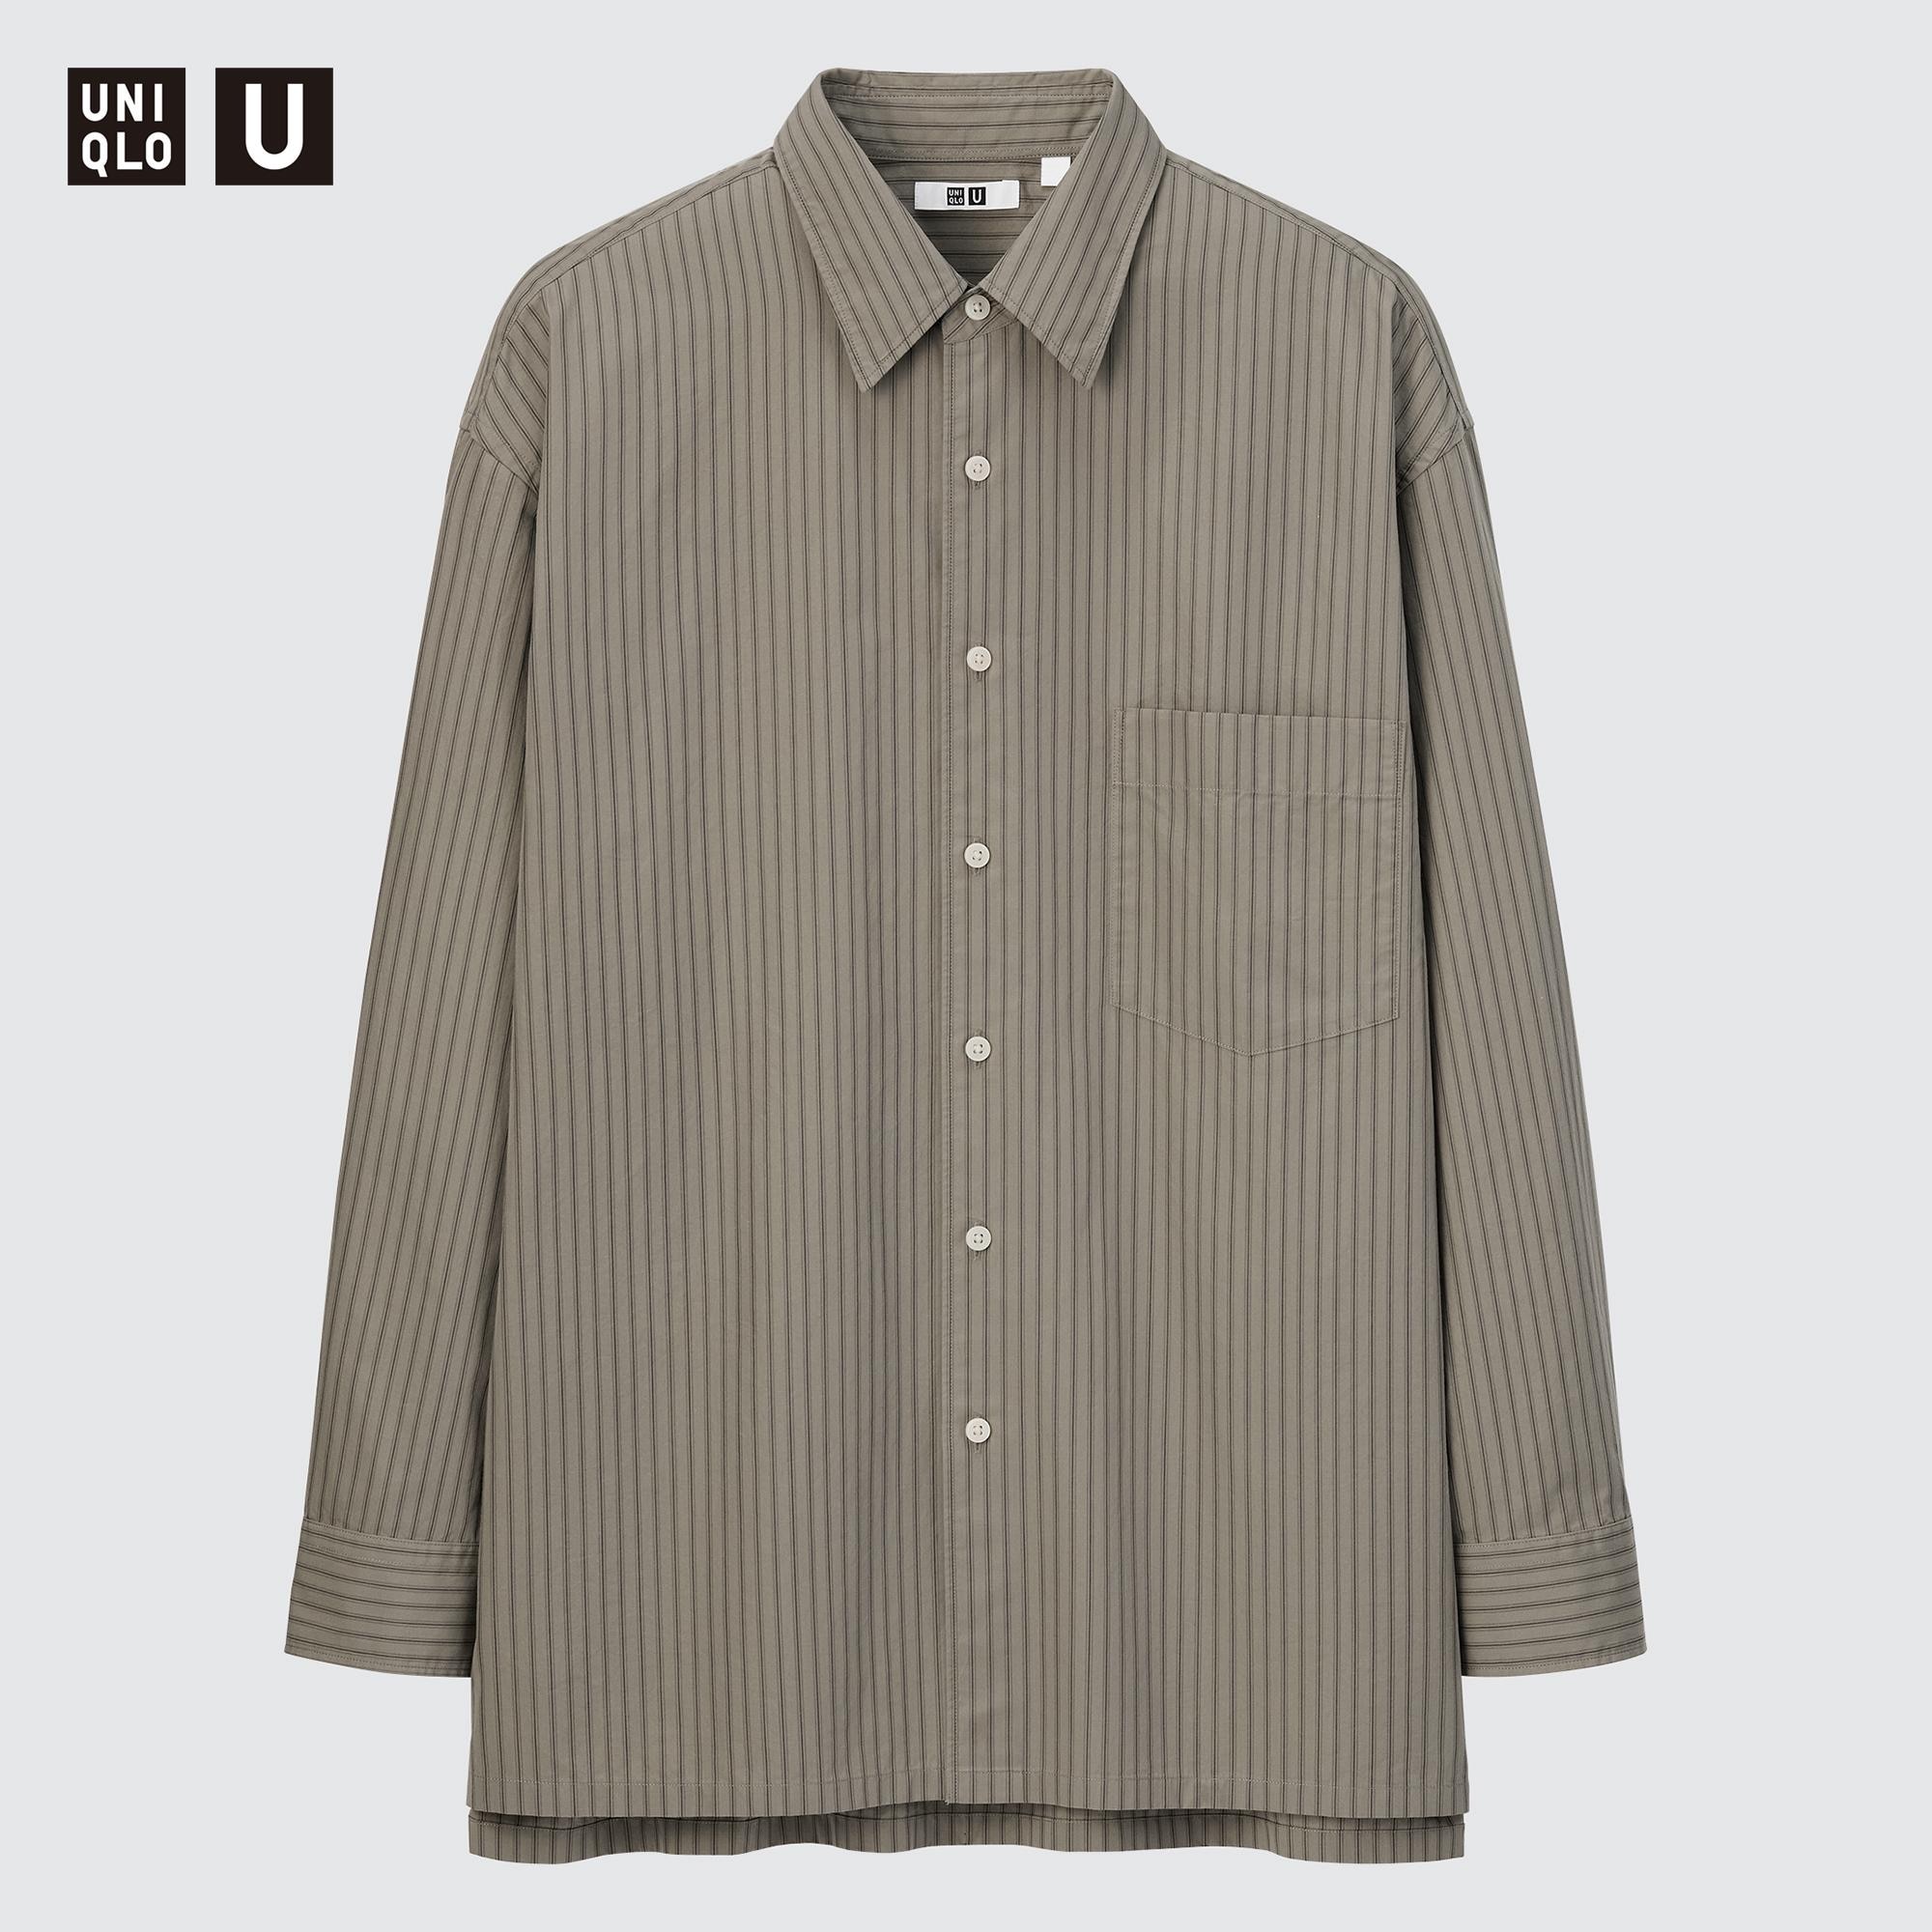 MEN Uniqlo U Oversized Striped Long Sleeve Shirt